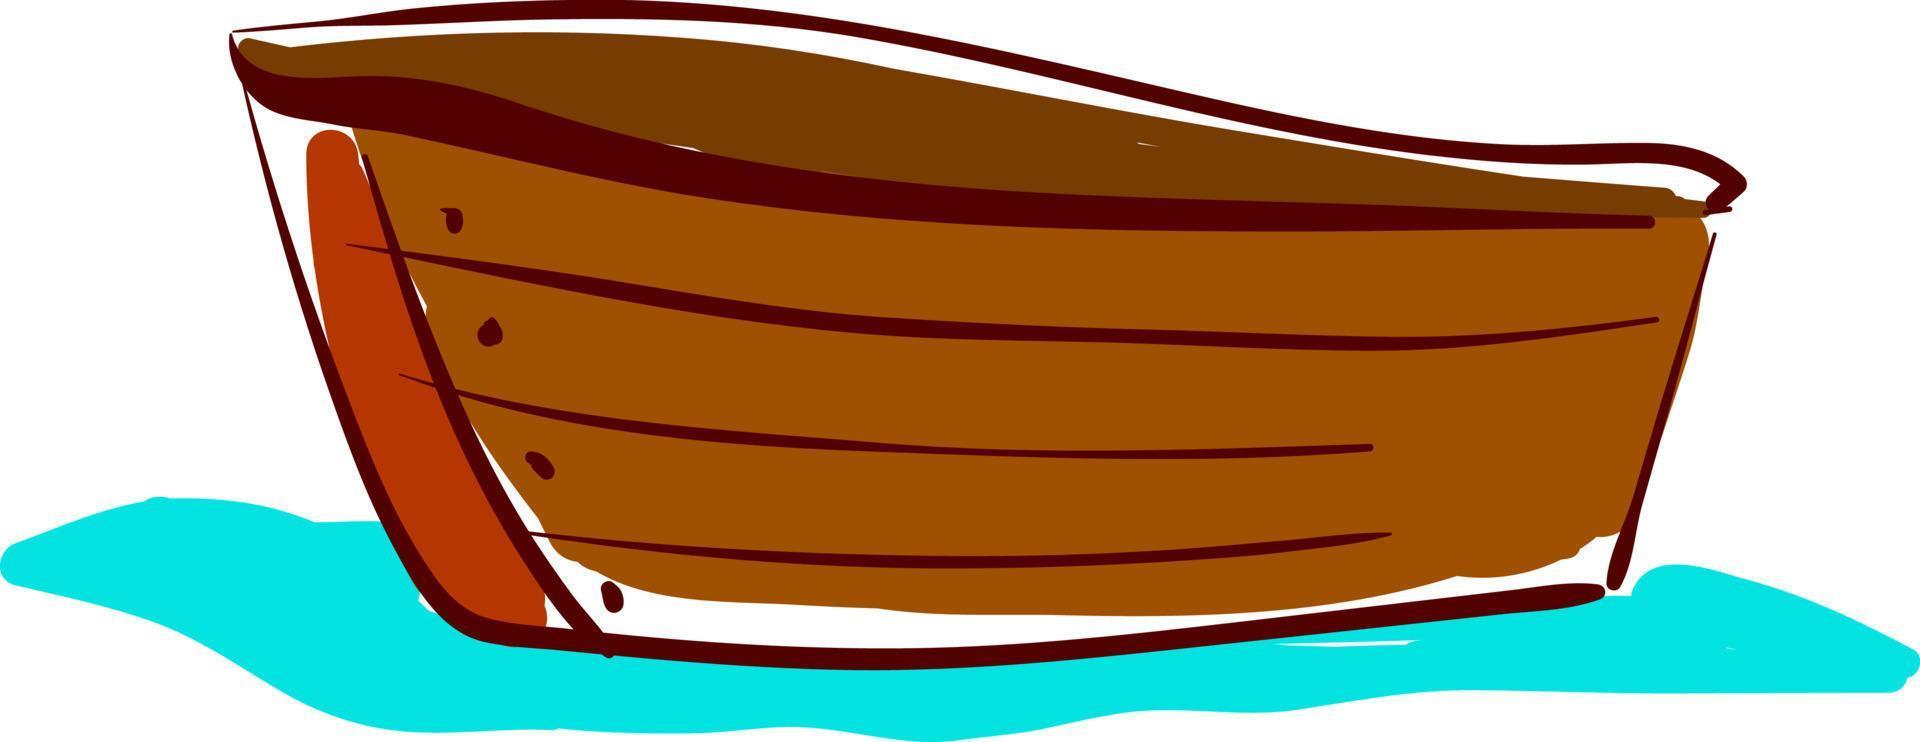 Holzboot, Illustration, Vektor auf weißem Hintergrund.